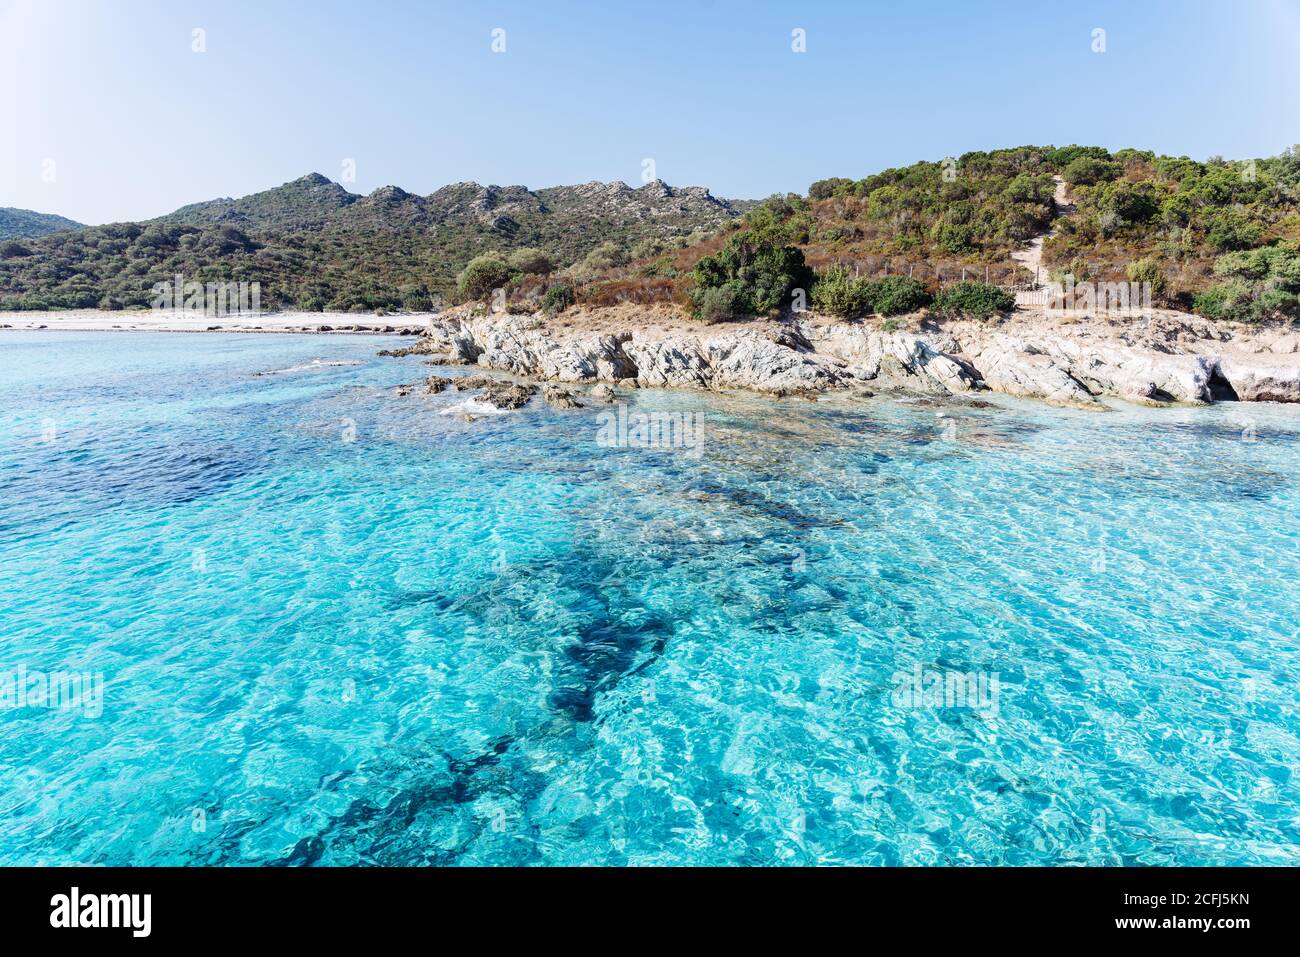 Plage de Lotus, Cap Corse, Corse, France. Eaux turquoise et littoral sauvage Banque D'Images